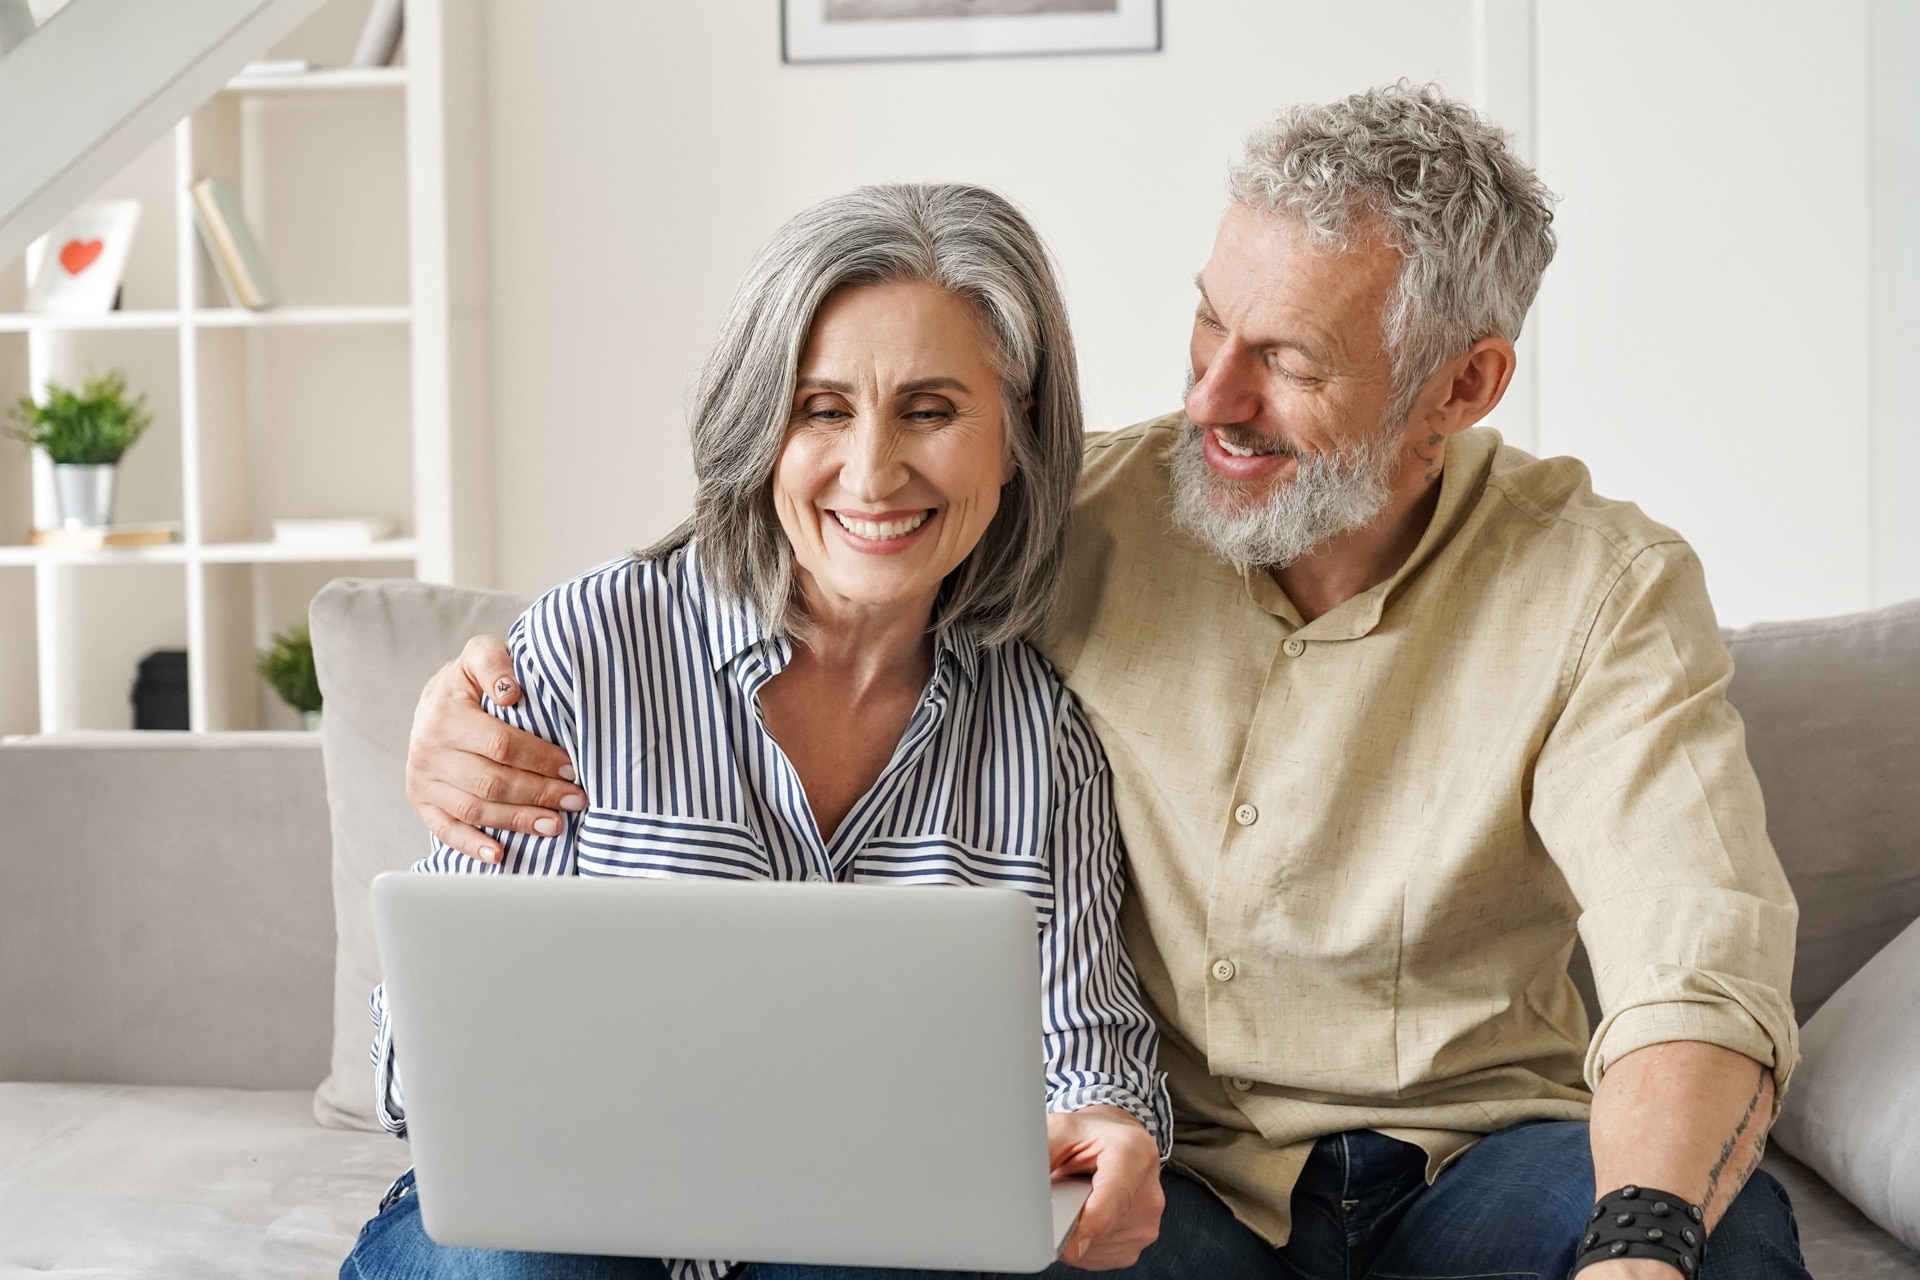 Glückliches Paar mittleren bis höheren Alters sitzt mit einem Laptop auf dem Sofa und kauft online über eine Webseite ein. Lächelnder älterer Mann und lächelnde ältere Frau recherchieren zu Hause im Internet zu Versicherungen.